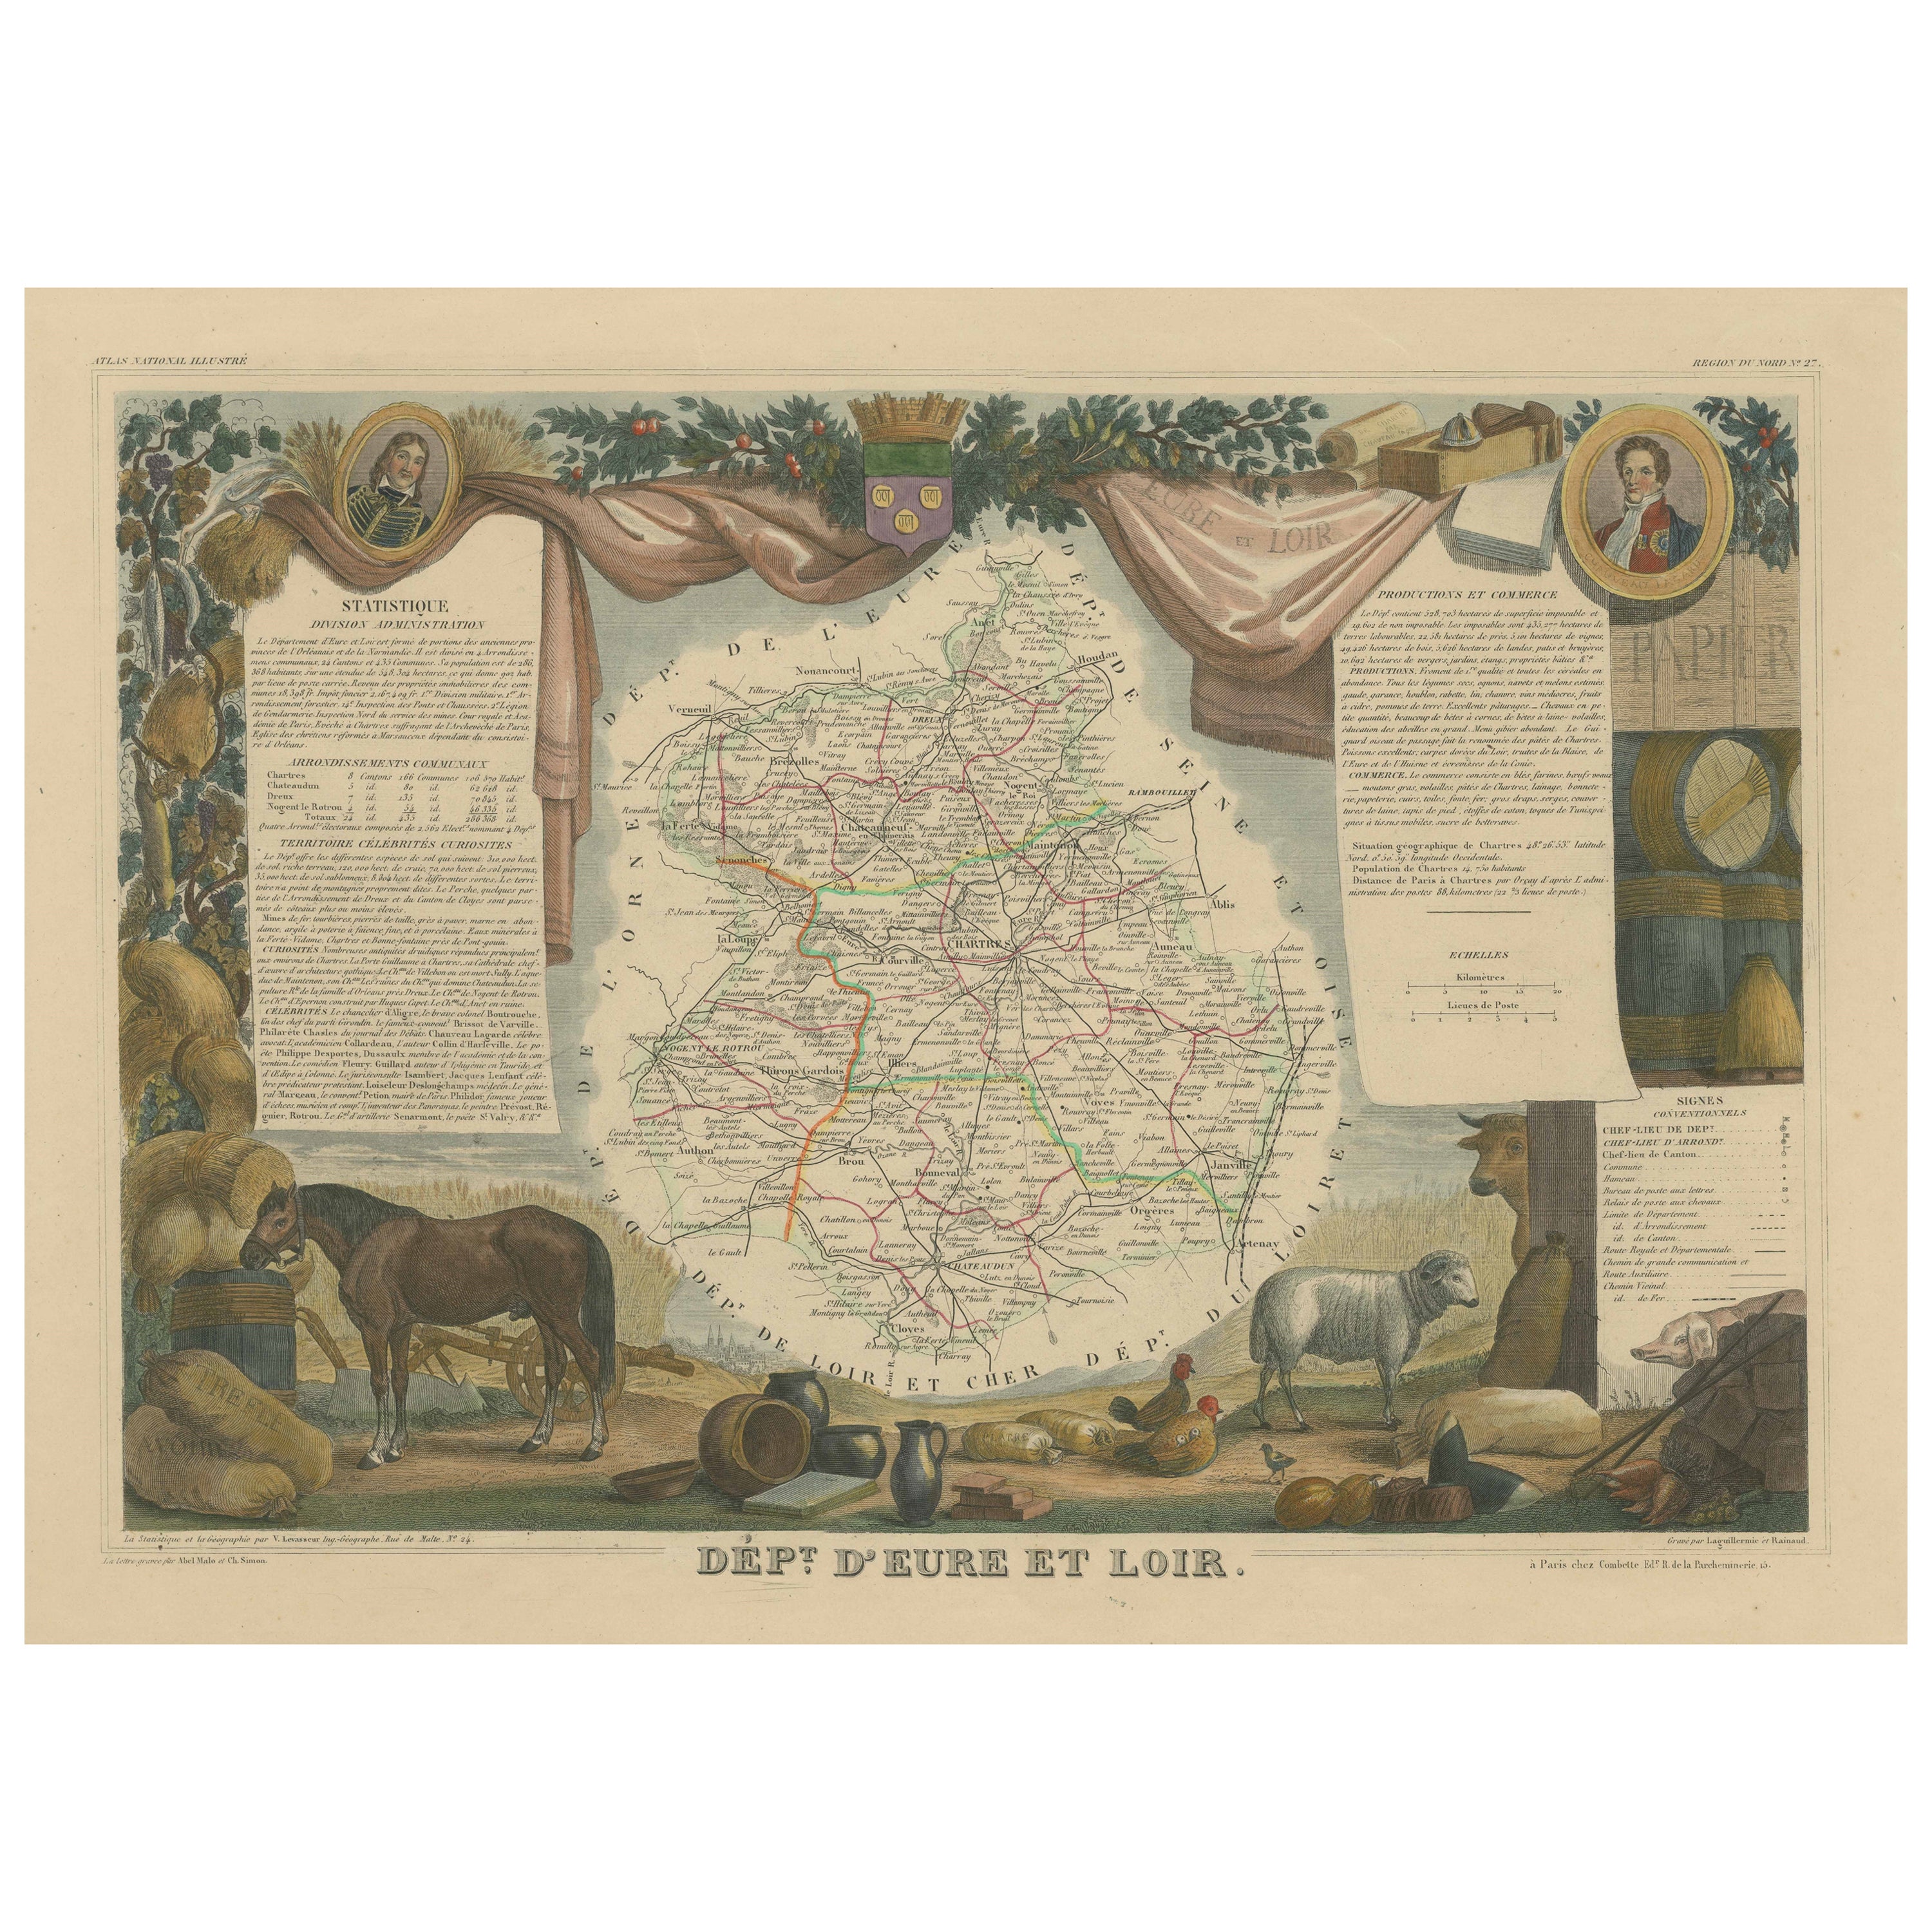 Carte ancienne colorée à la main du département d'Eure-et-loir, France